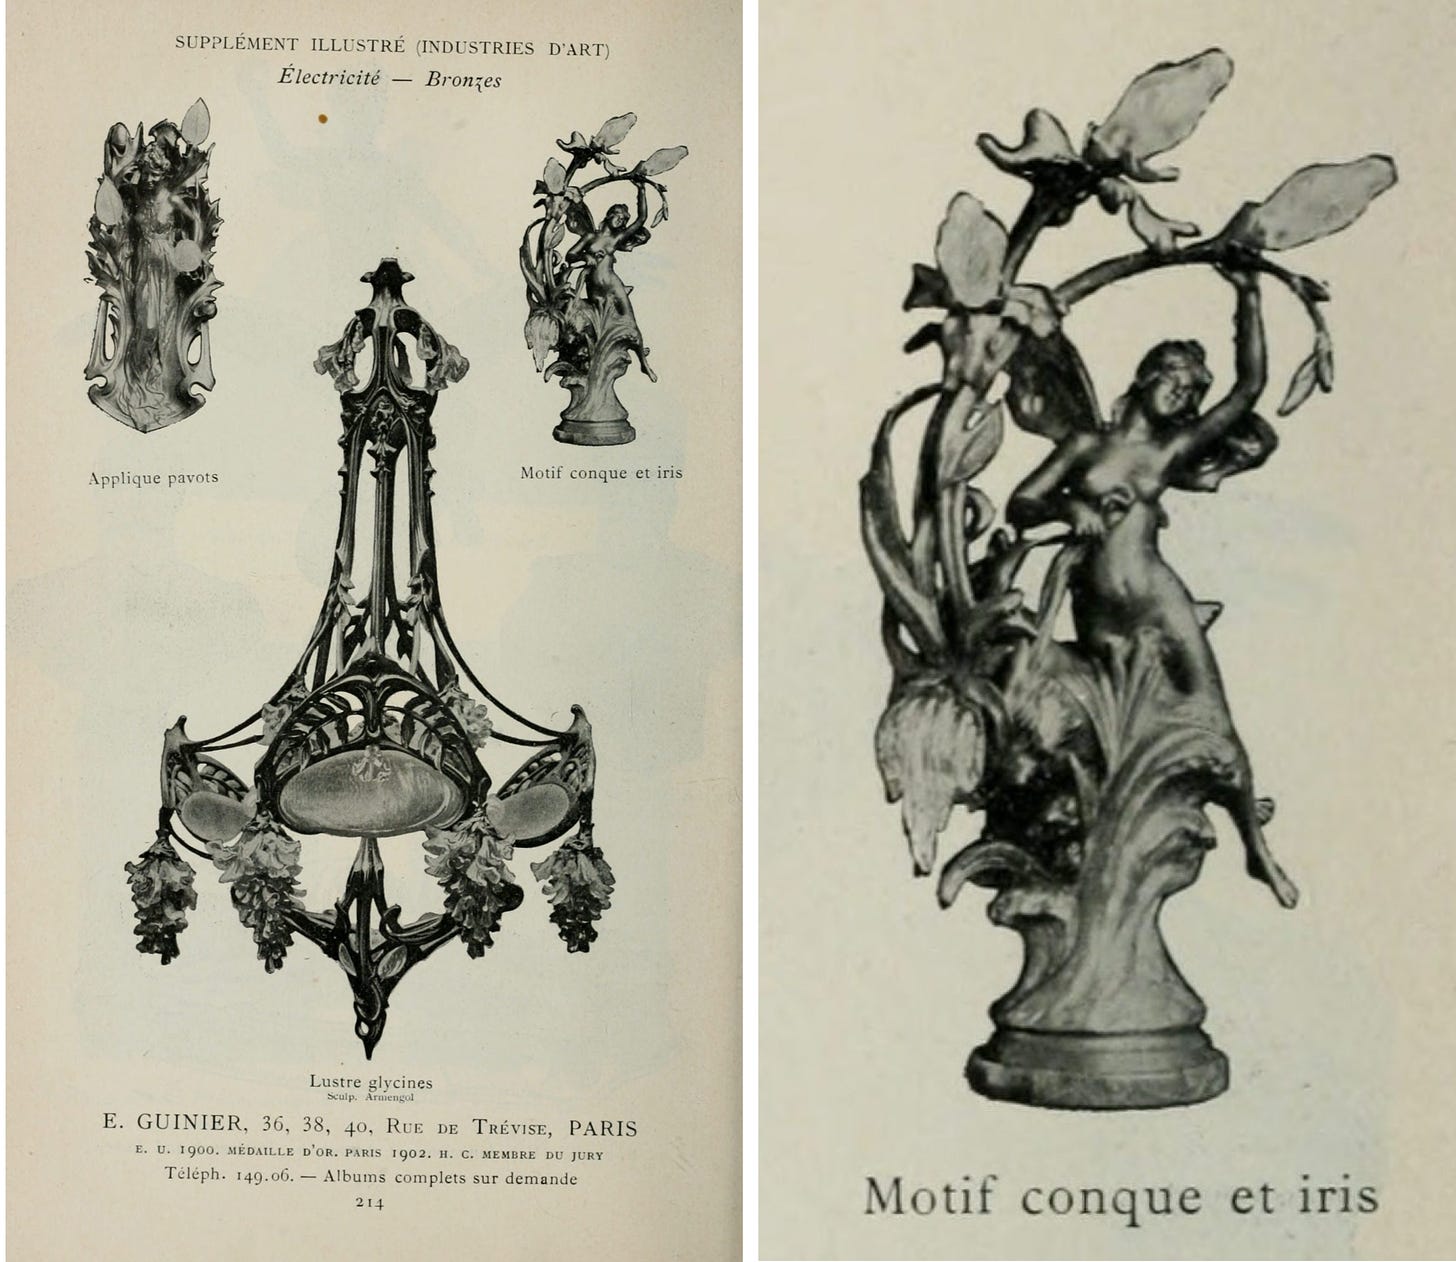 A sample of artistic lamp designs by Guinier, 1903 (Société des artistes français, *Catalogue illustré de peinture et sculpture. Salon de 1903. Supplément illustré (industries d'art)*, Ludovic Baschet éd., Paris, 1903, p. 214.